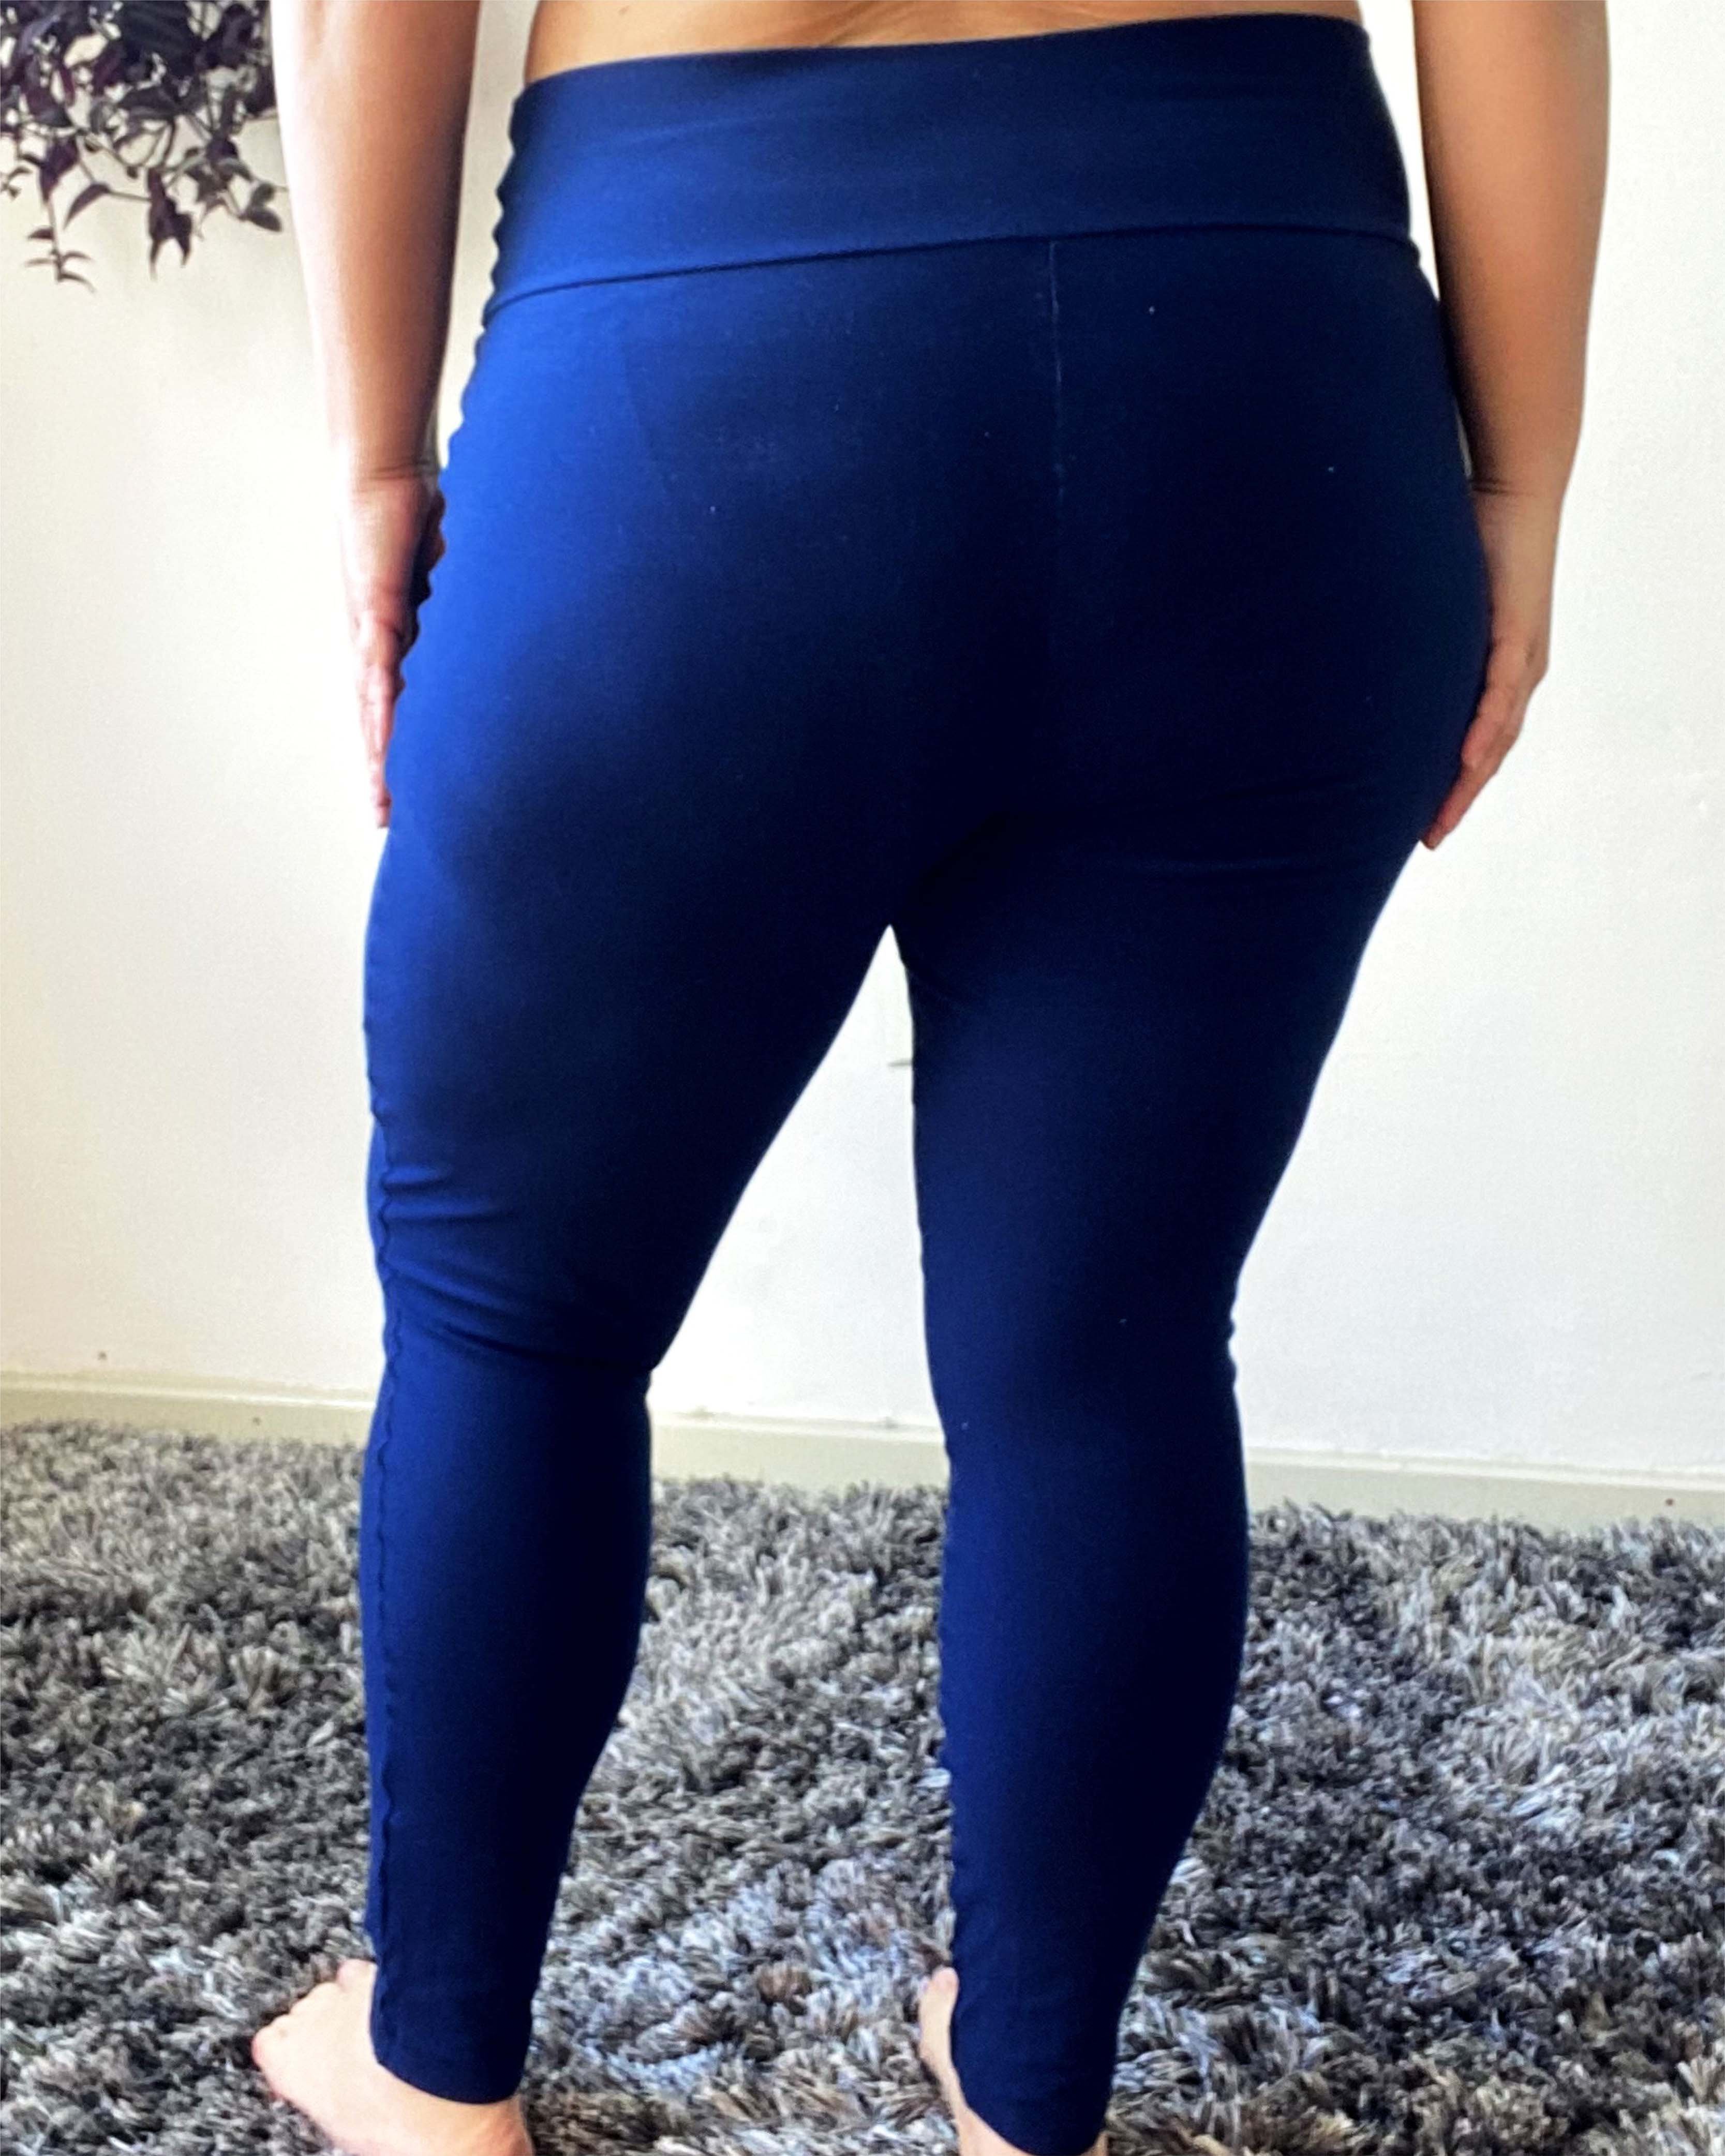 legging-plus-size-lisa-azul-marinho-supplex-costas